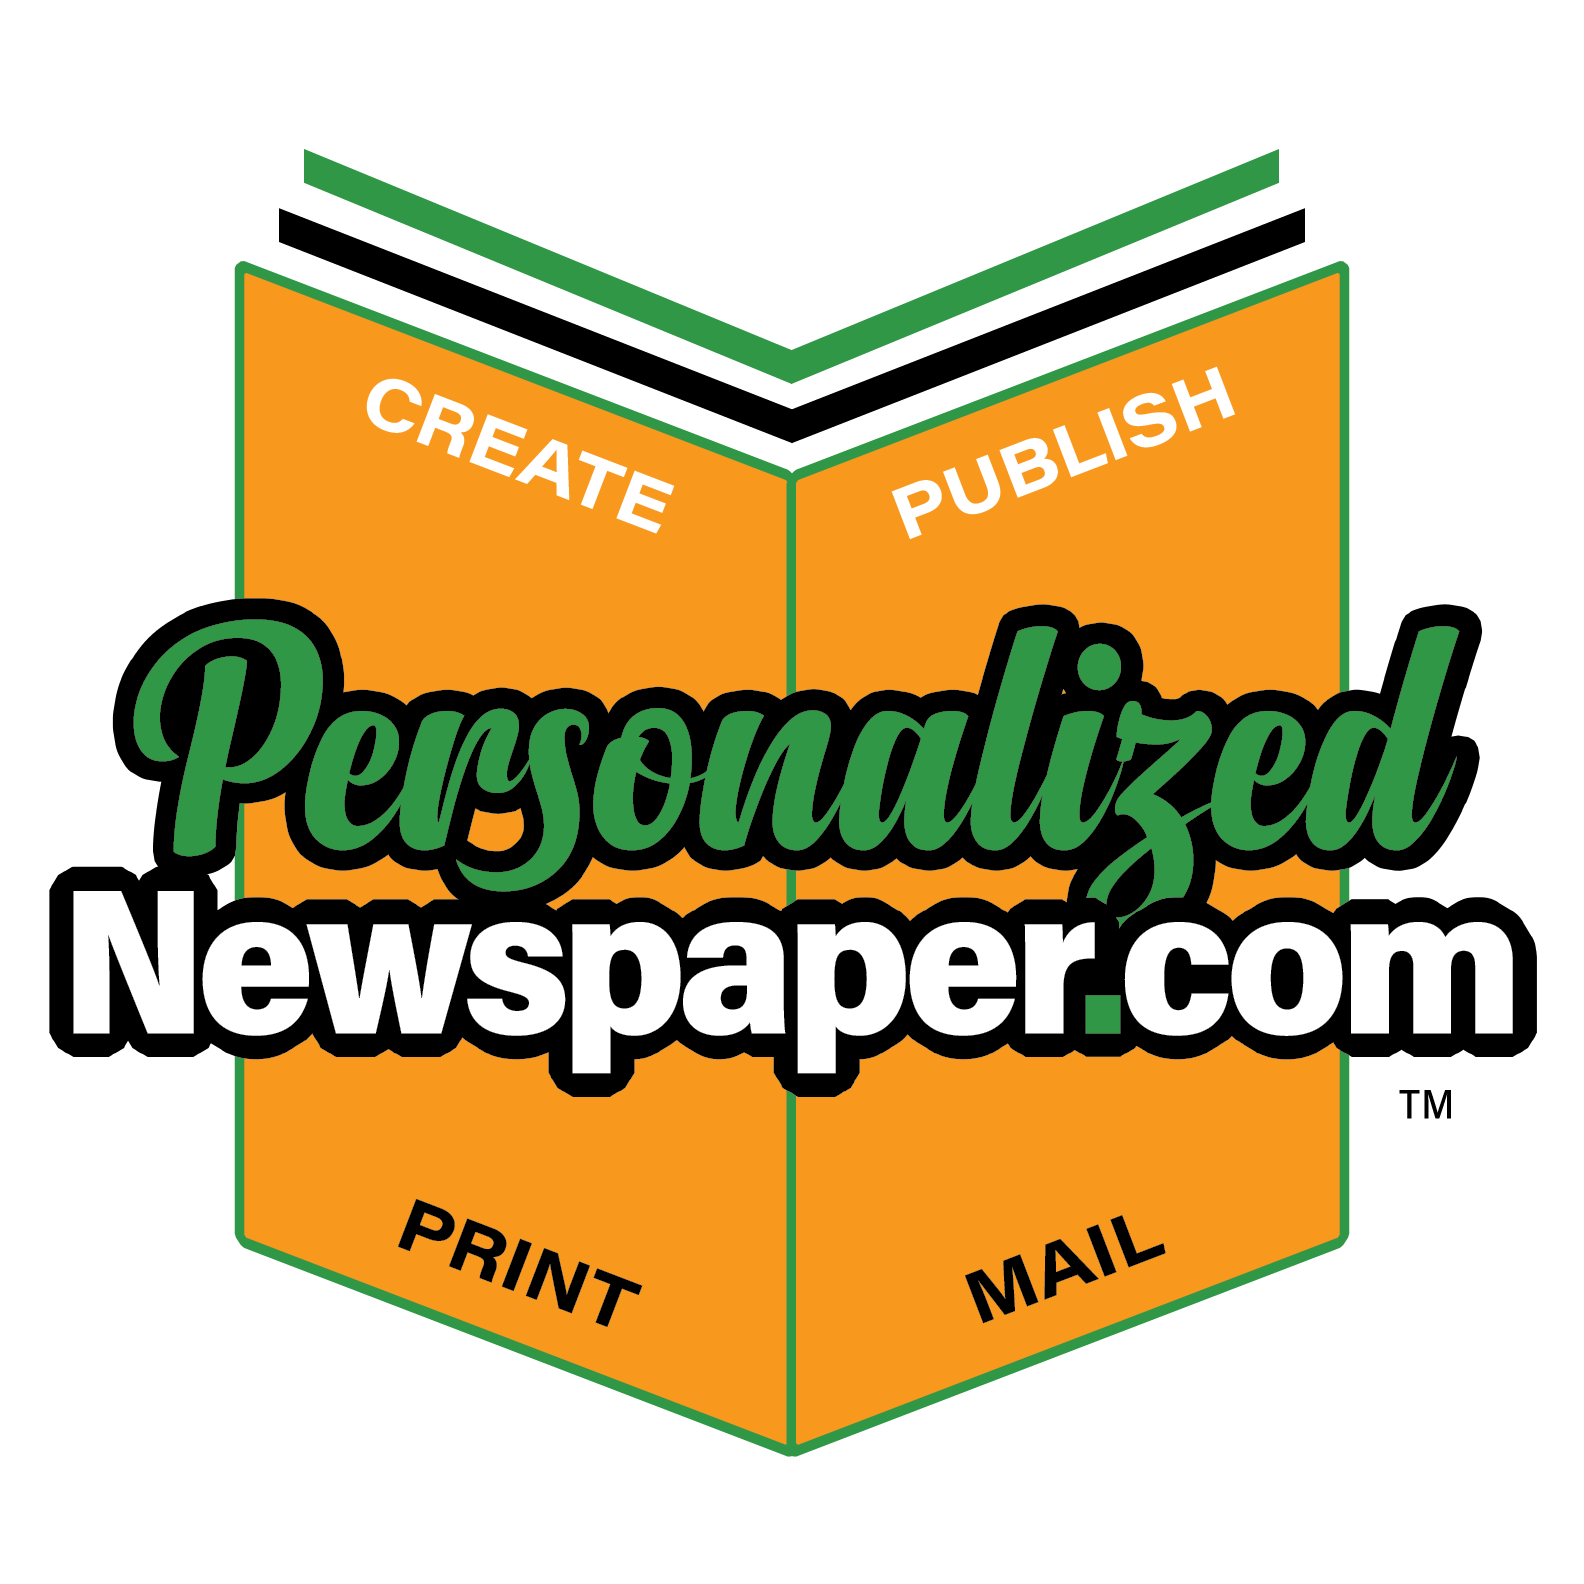 PersonalizedNewspaper.com Official Logo